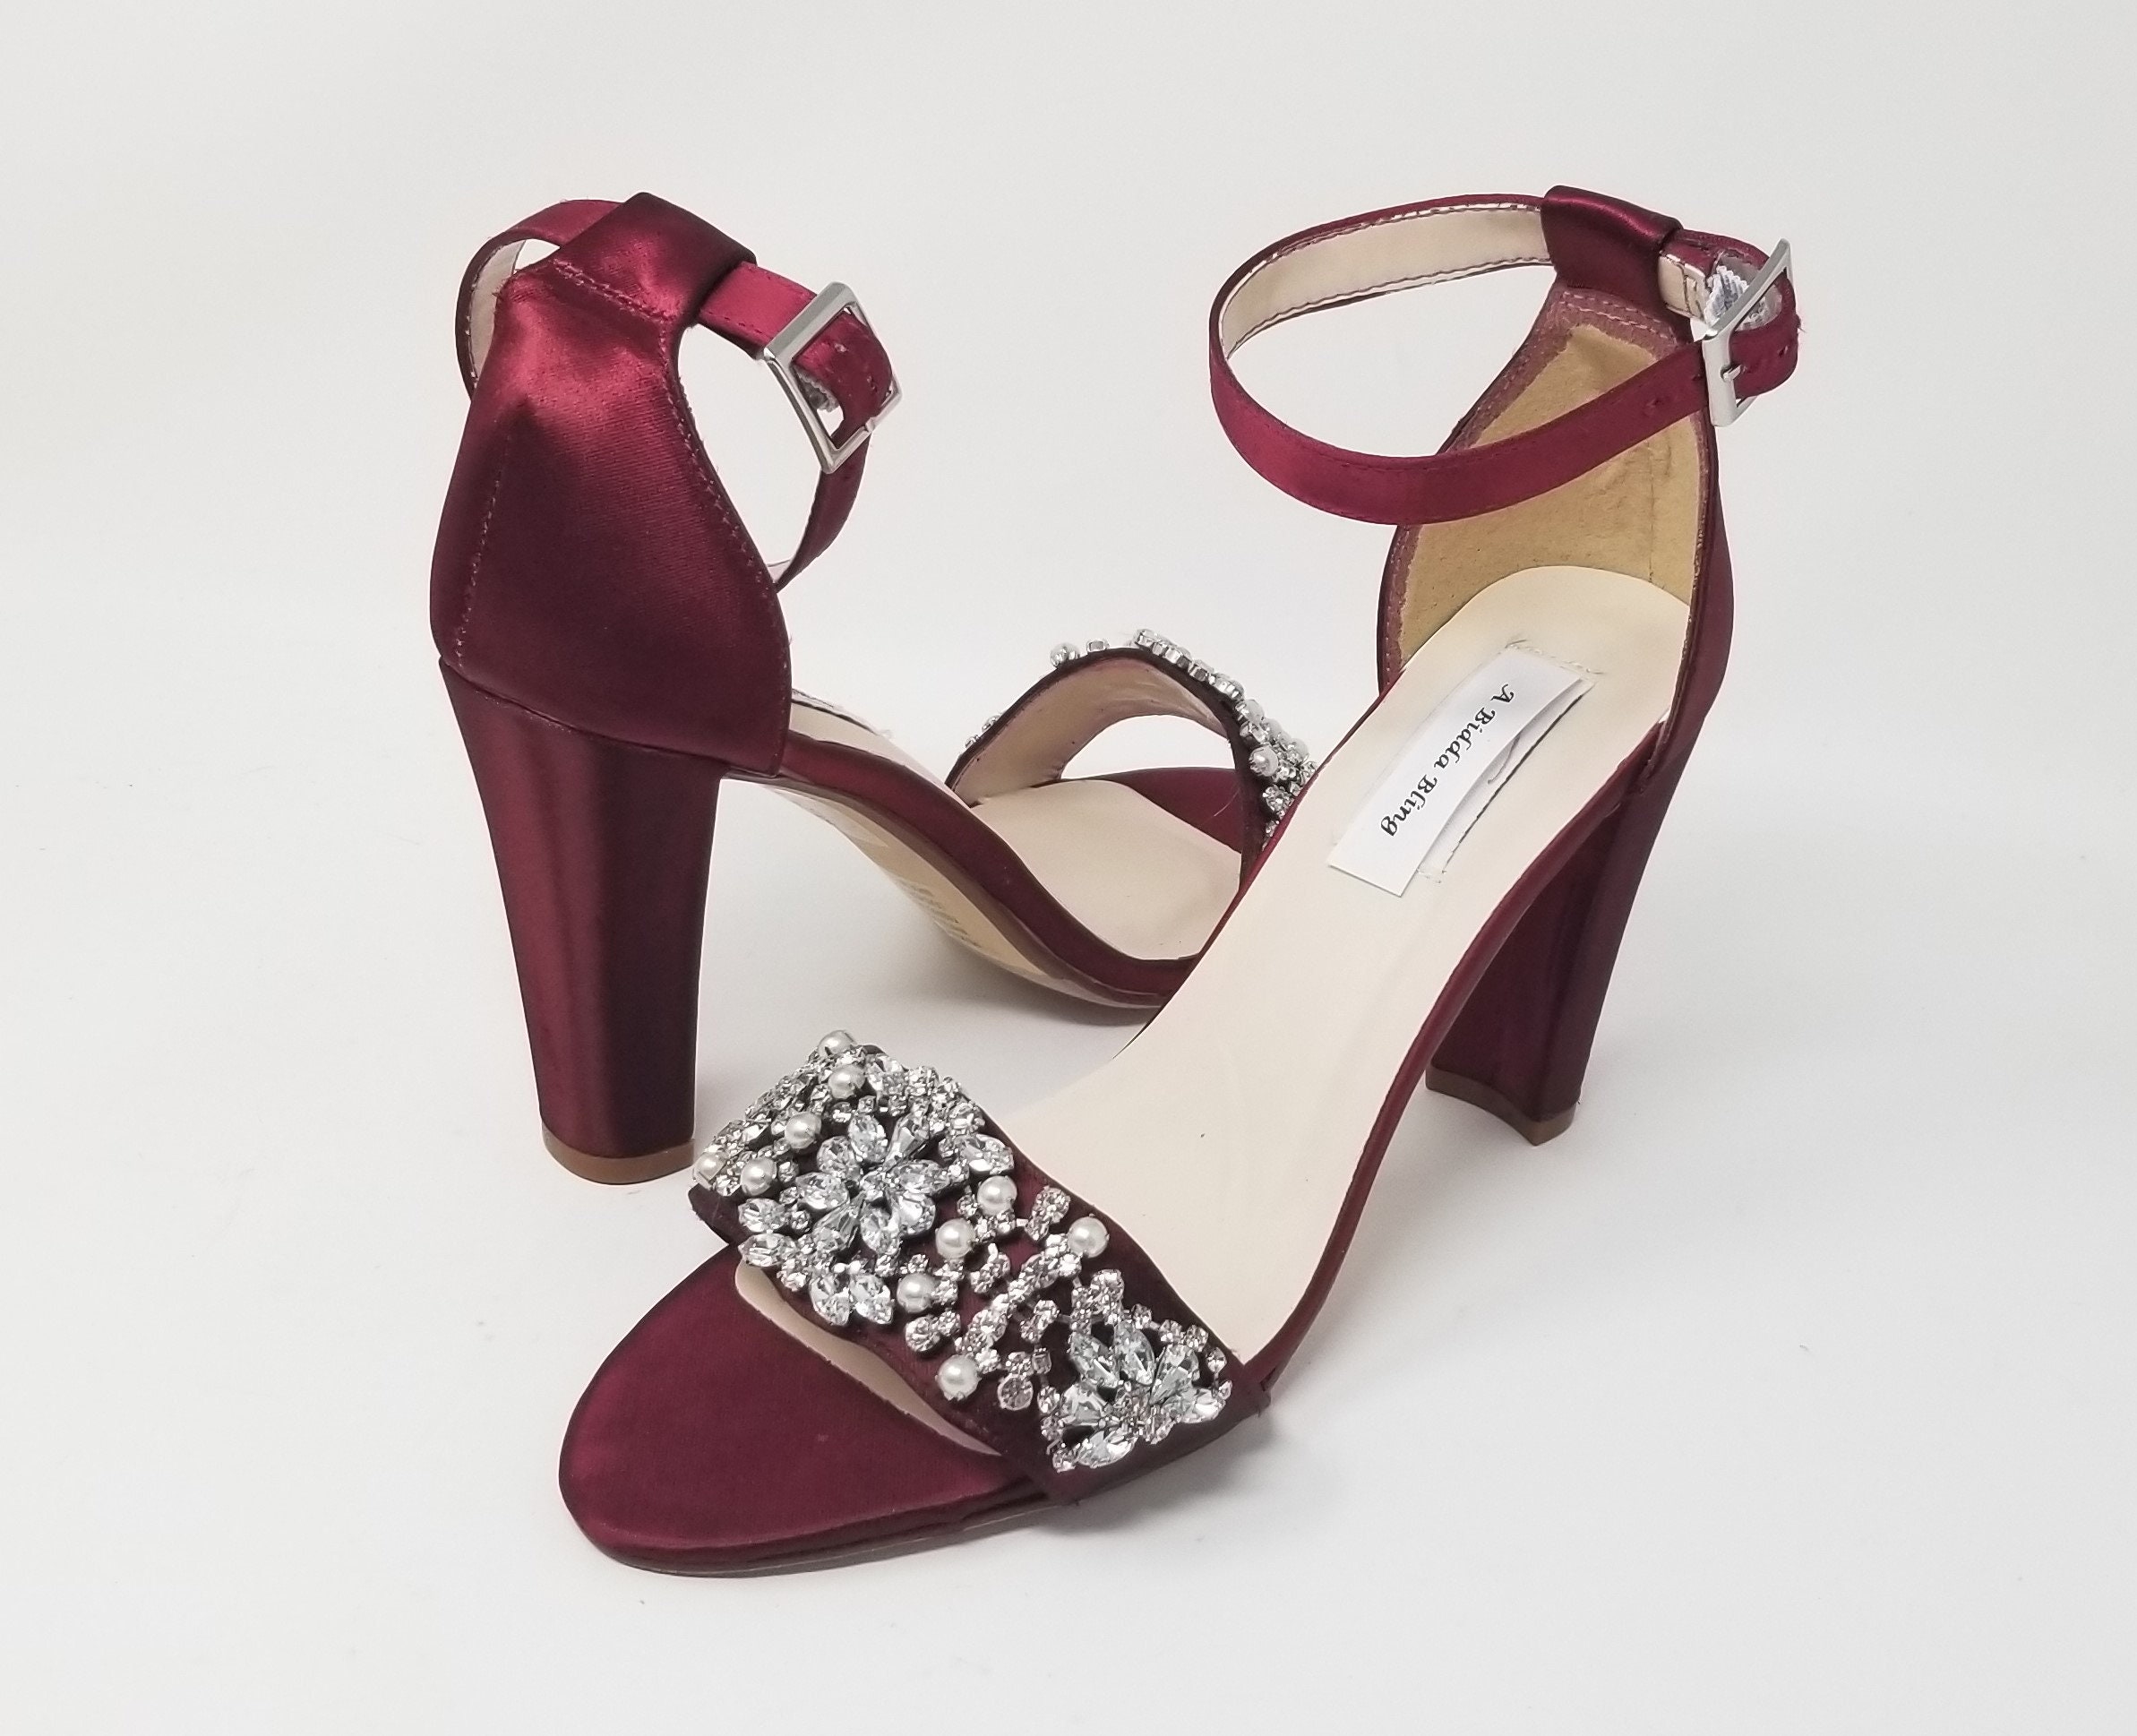 Buy Shoetopia Gold-toned Printed Design Wine Block Heels For Women And  Girls Online